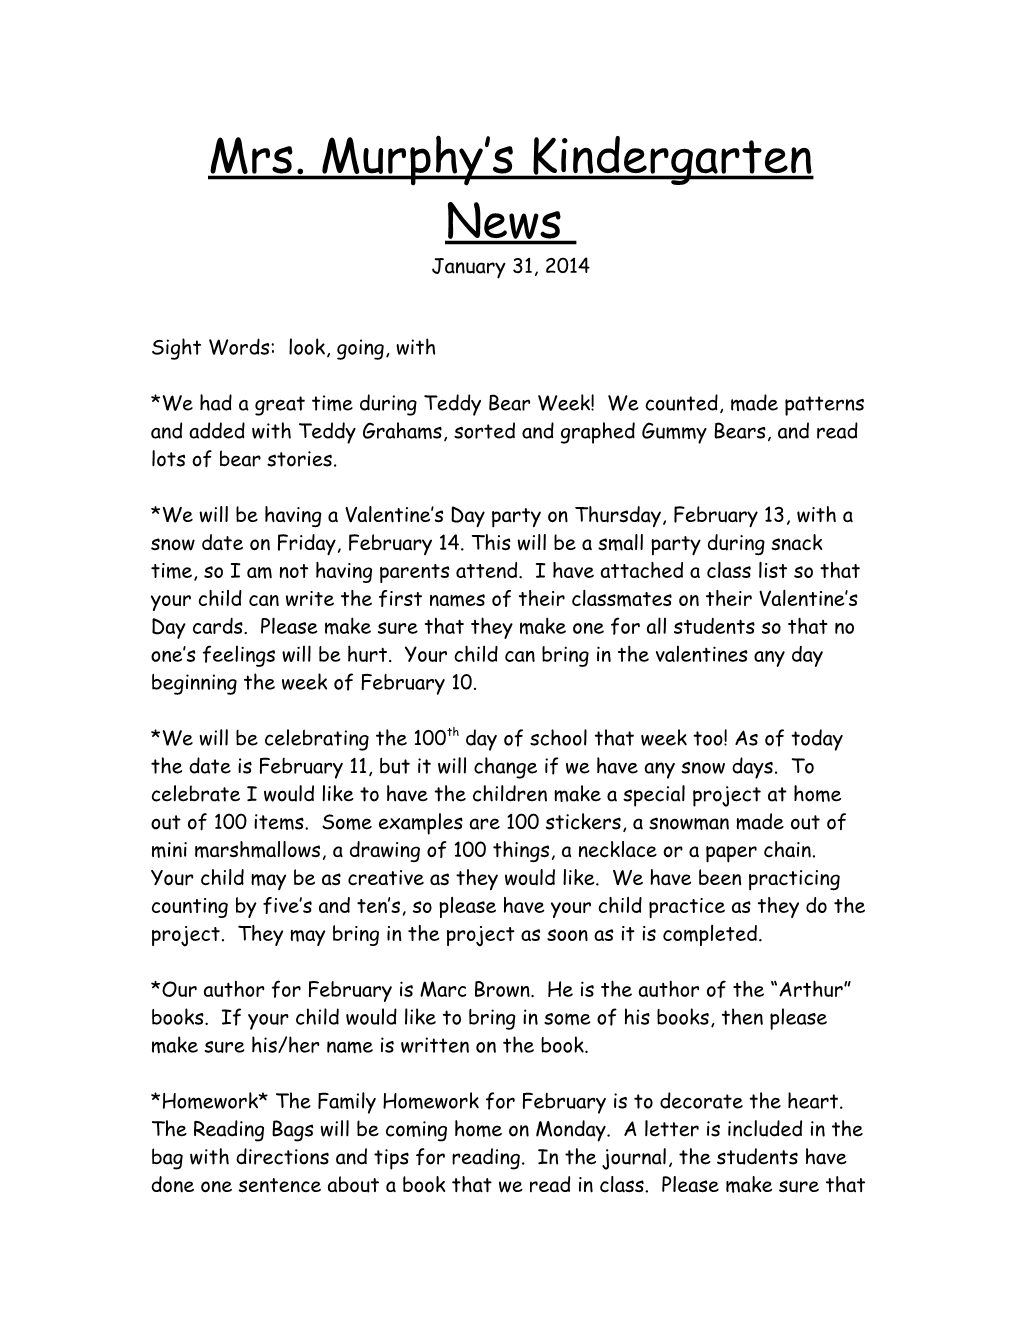 Kindergarten News Update